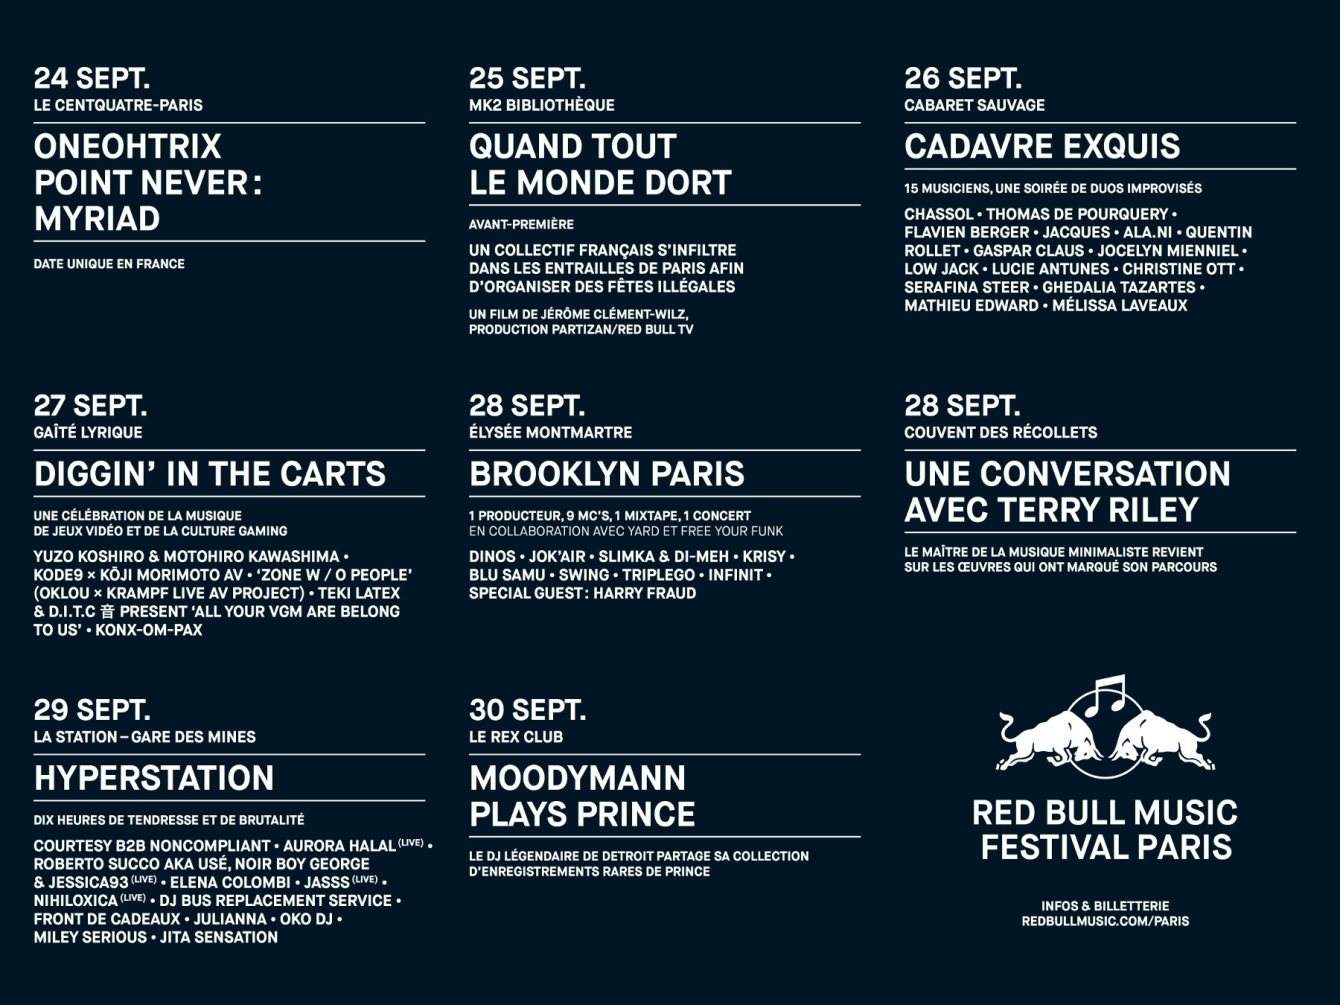 Red Bull Music Festival Paris 2018 - フライヤー裏